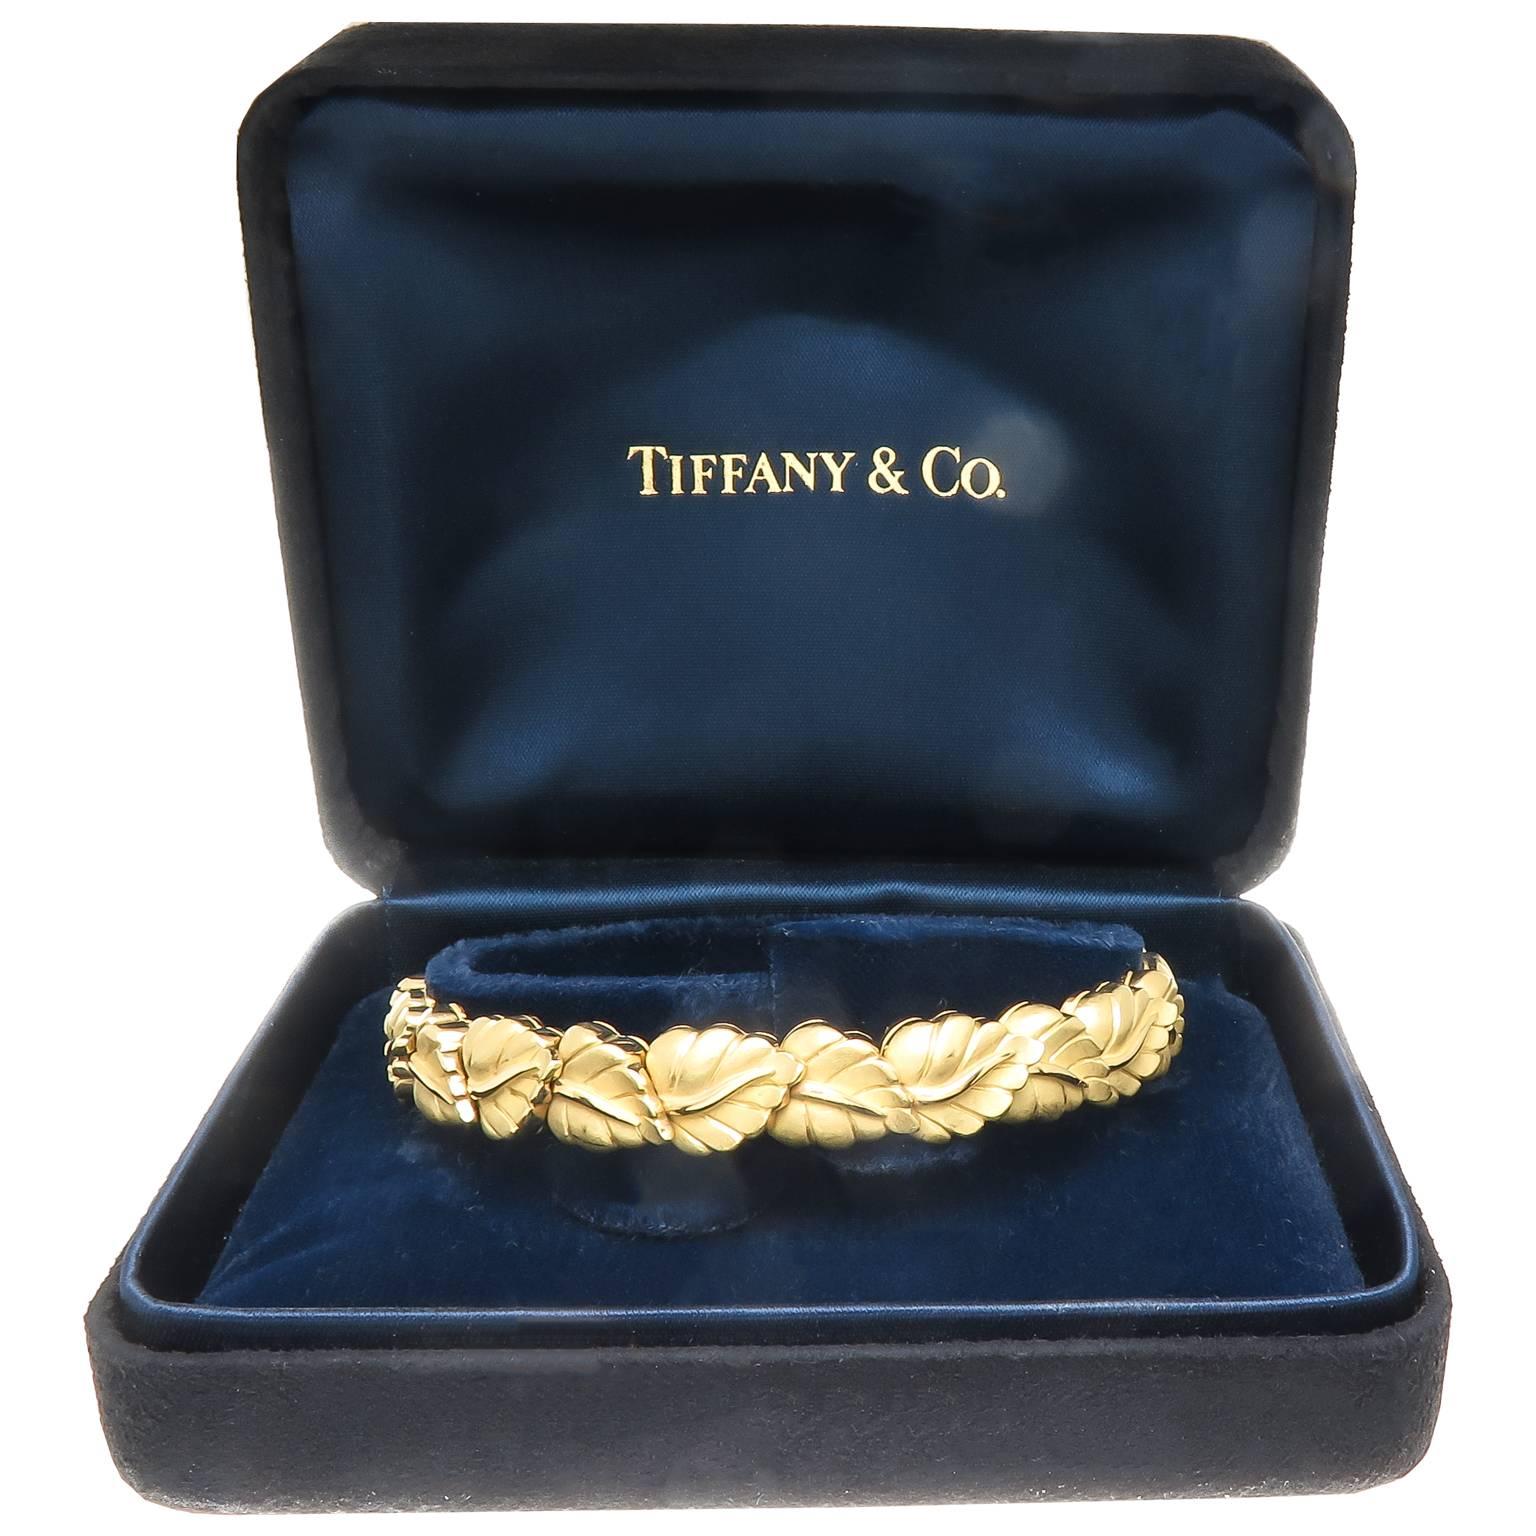 gold leaf bracelet